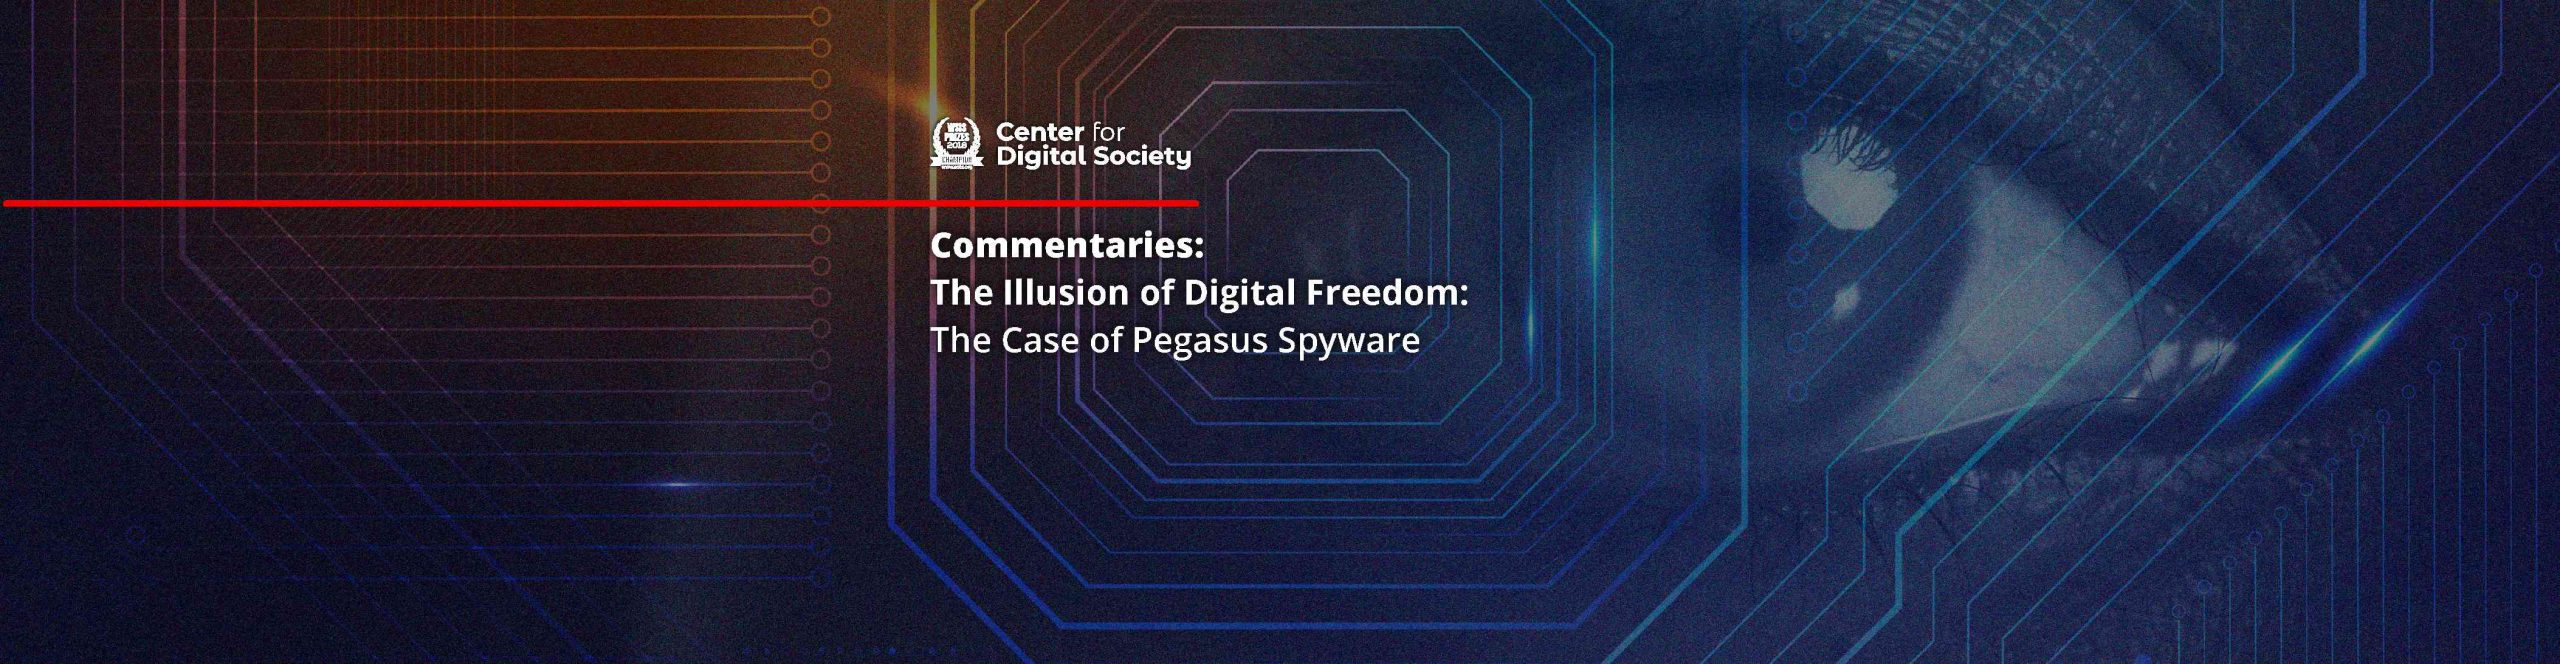 Ilusi Kebebasan Digital: Kasus Spyware Pegasus